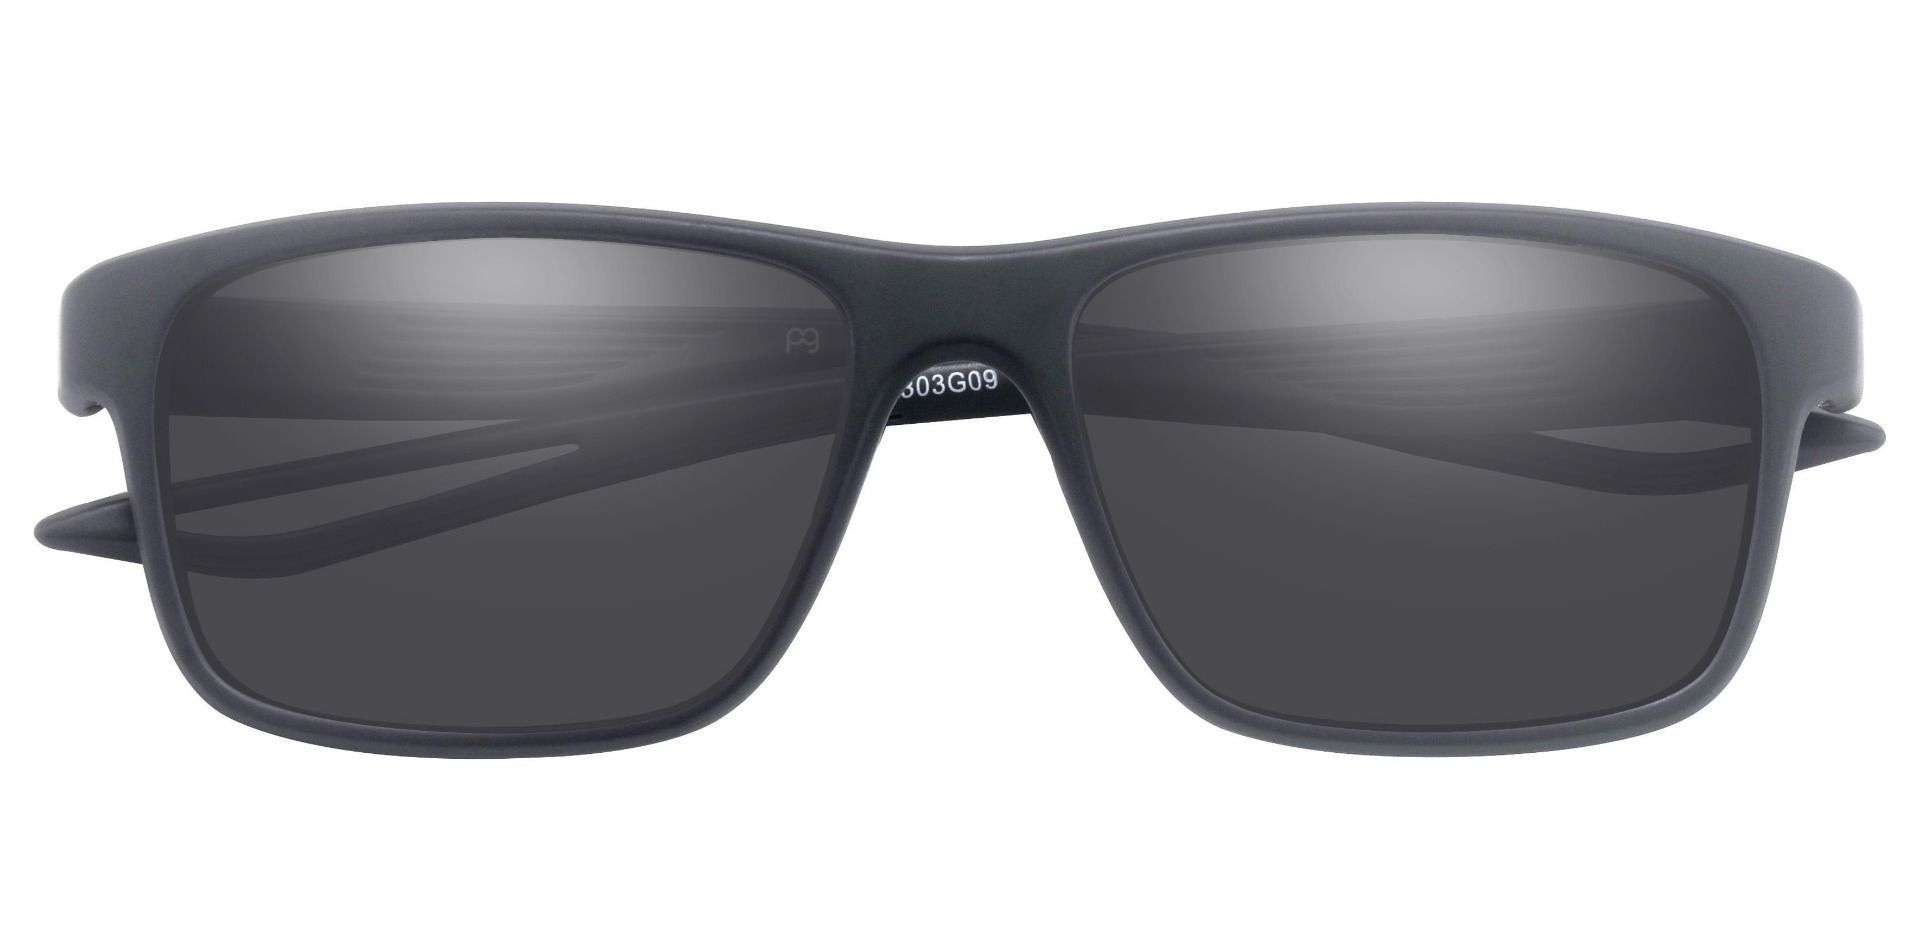 Frost Classic Square Prescription Sunglasses - Gray Frame With Gray ...